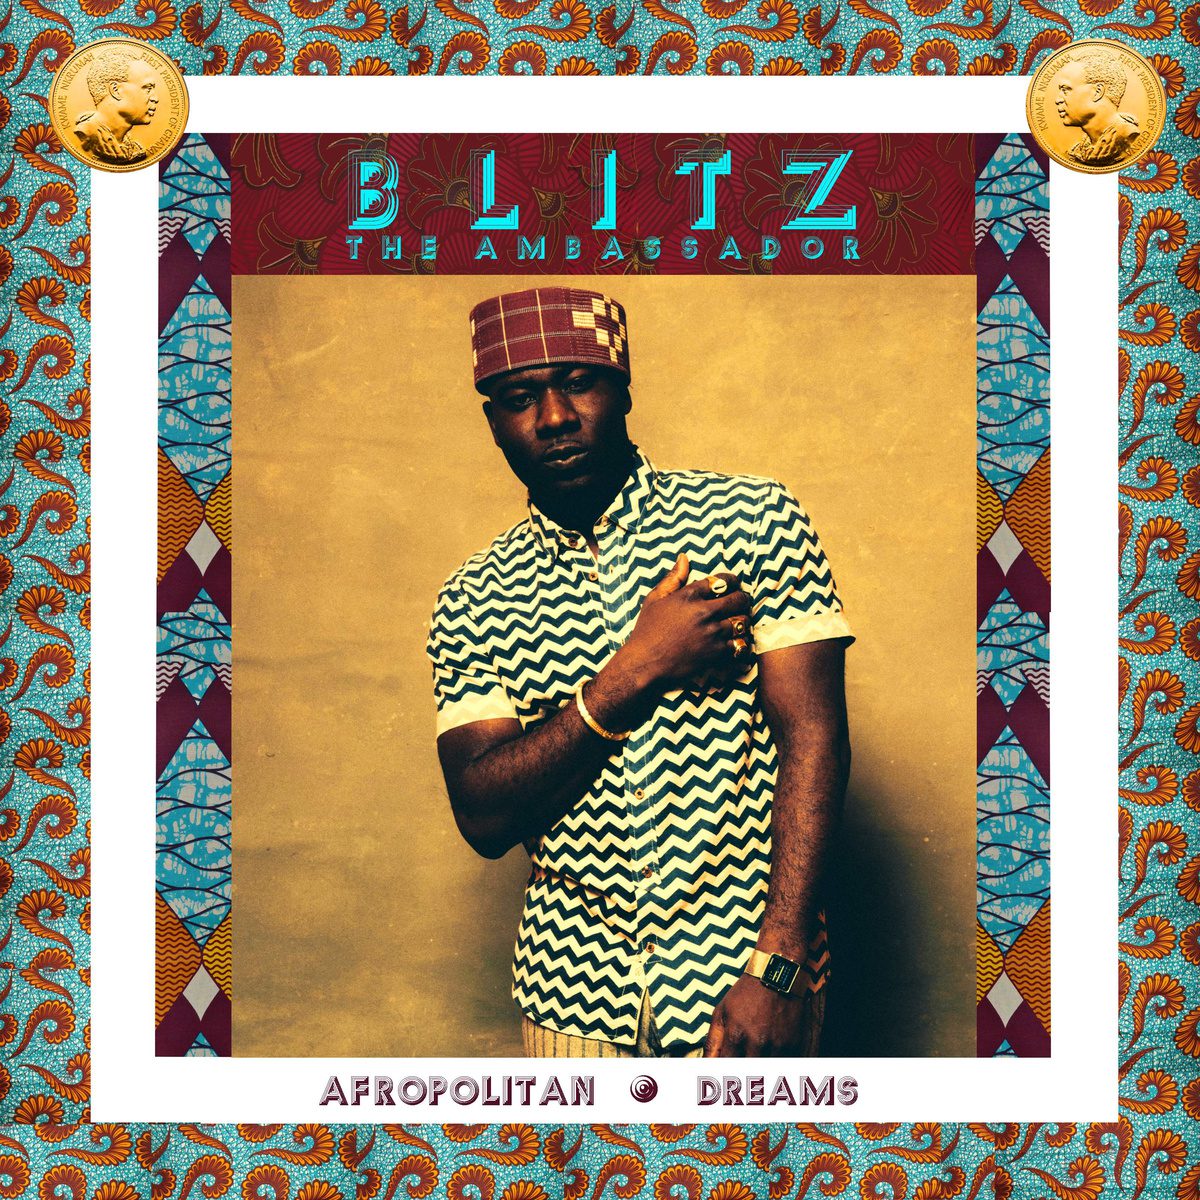 Blitz the Ambassador - Afropolitan Dreams